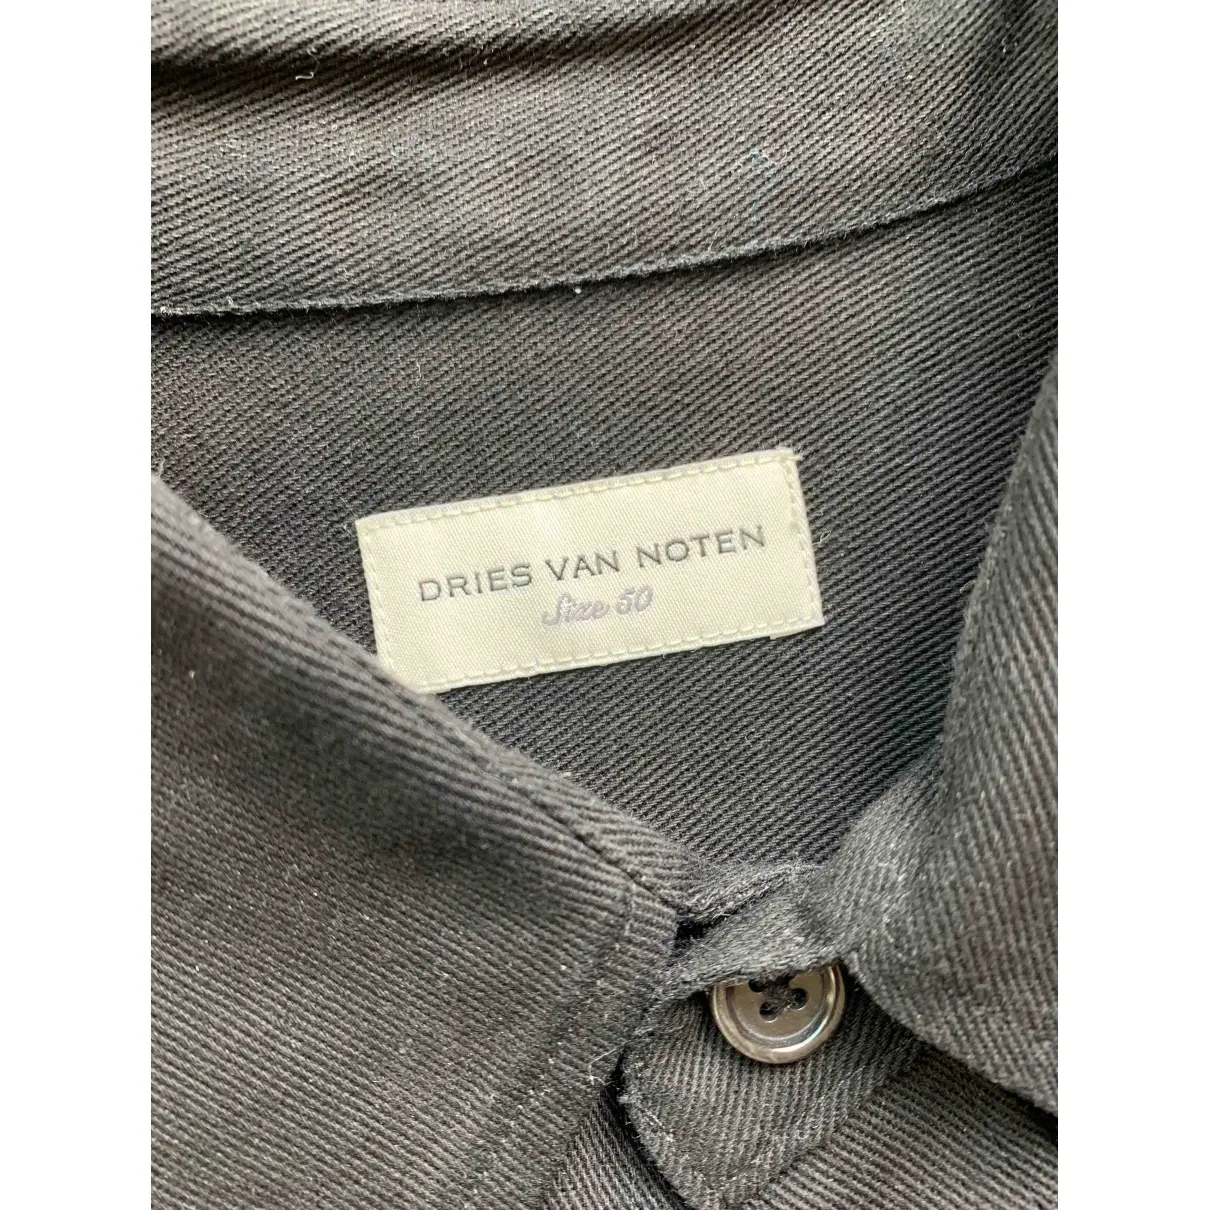 Buy Dries Van Noten Shirt online